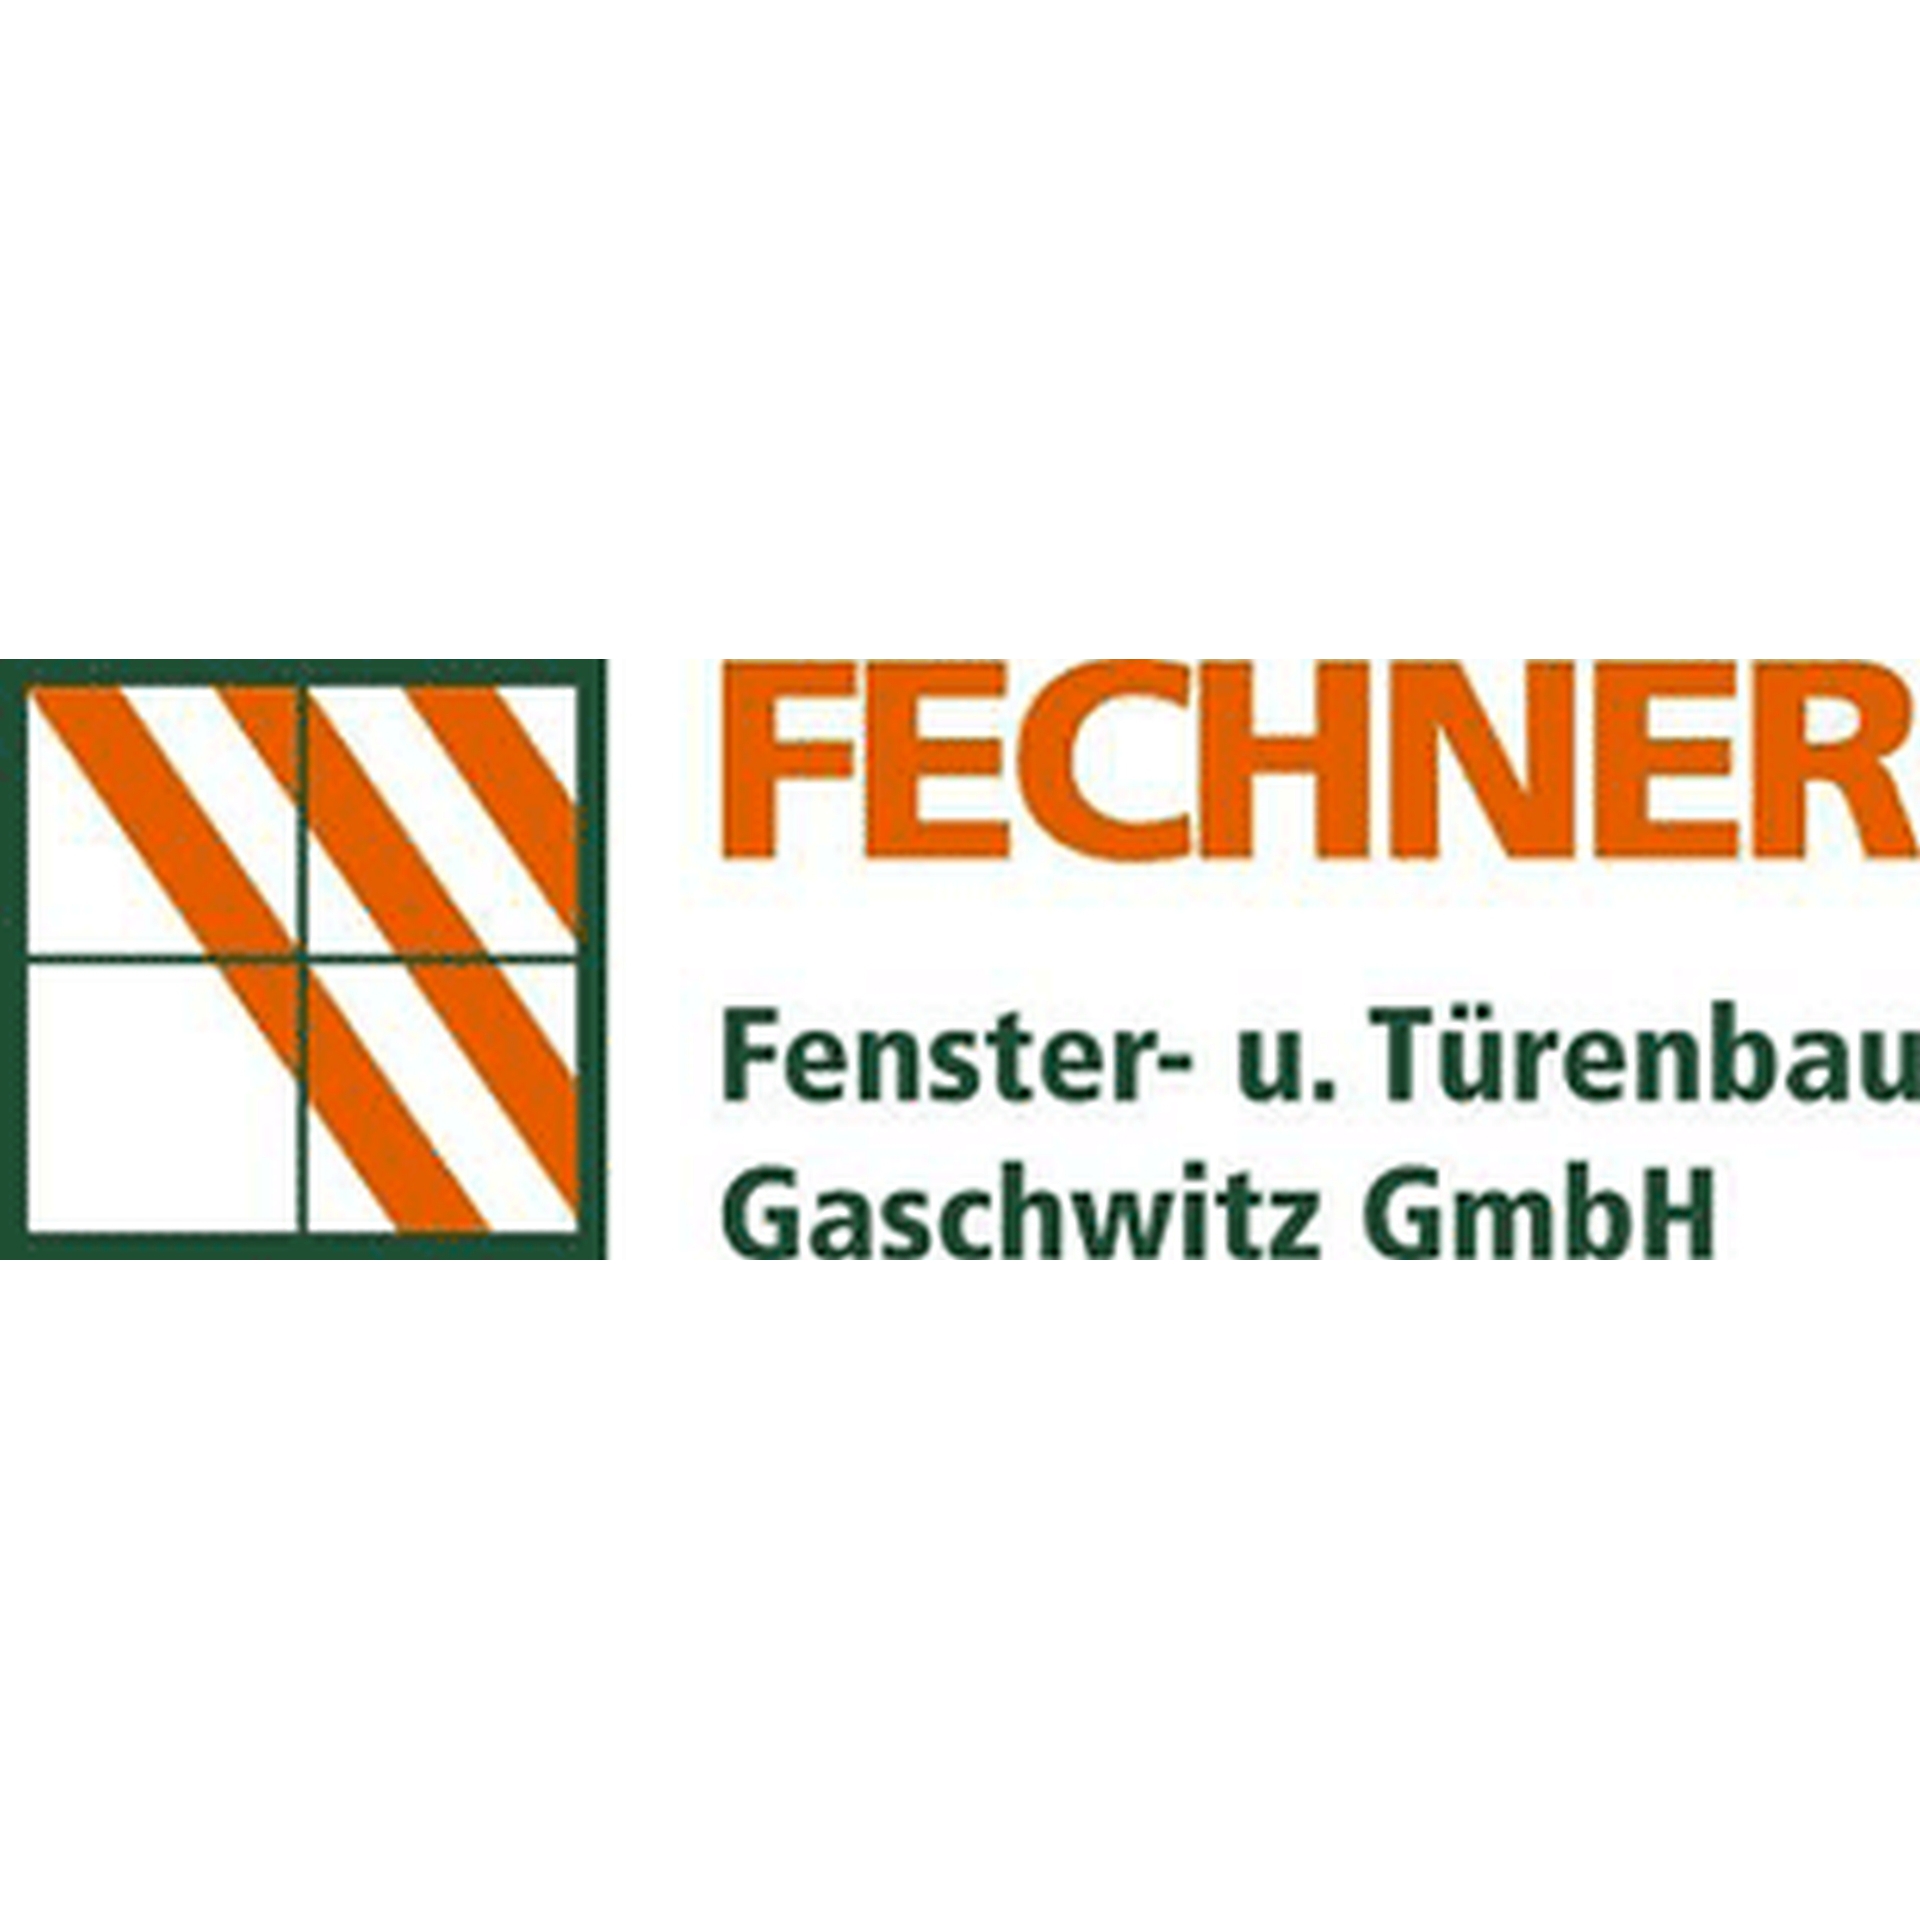 Fechner Fenster- und Türenbau Gaschwitz GmbH in Markkleeberg - Logo